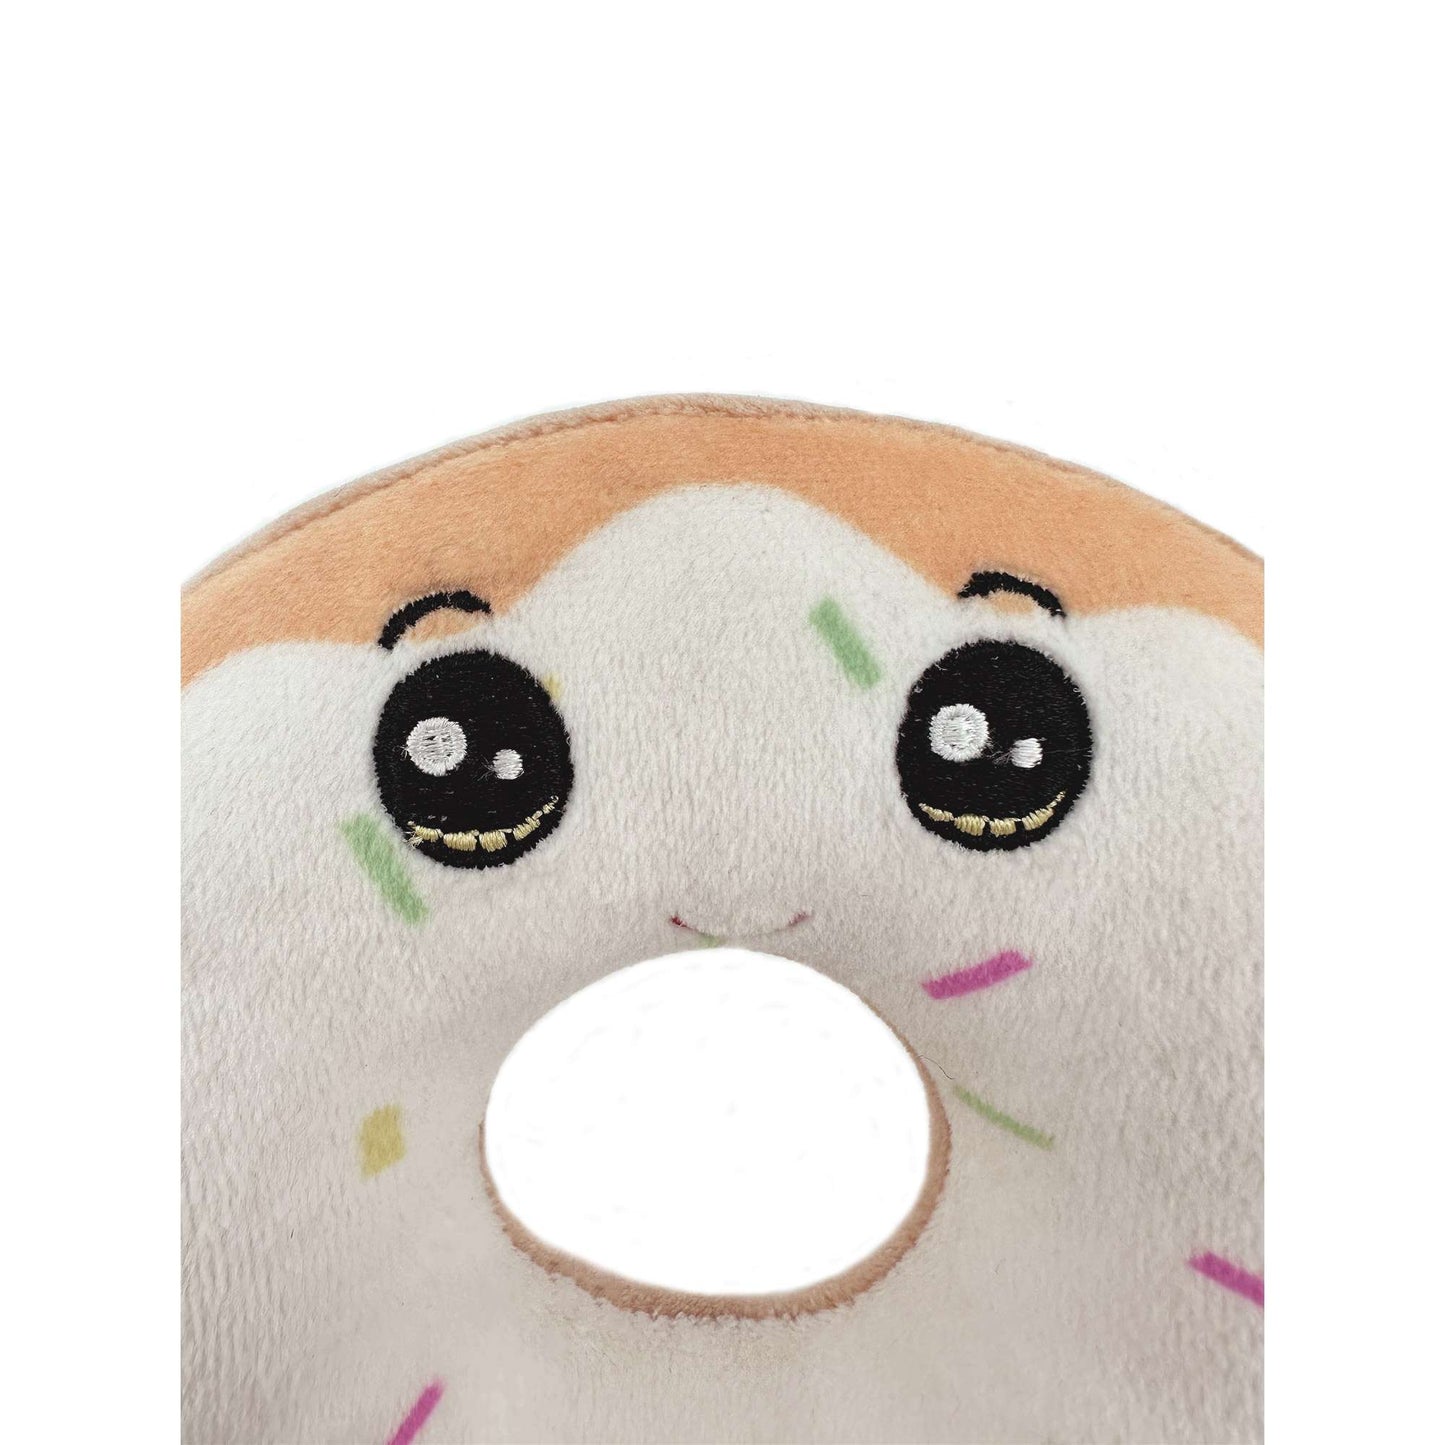 Plush donut toy eyes